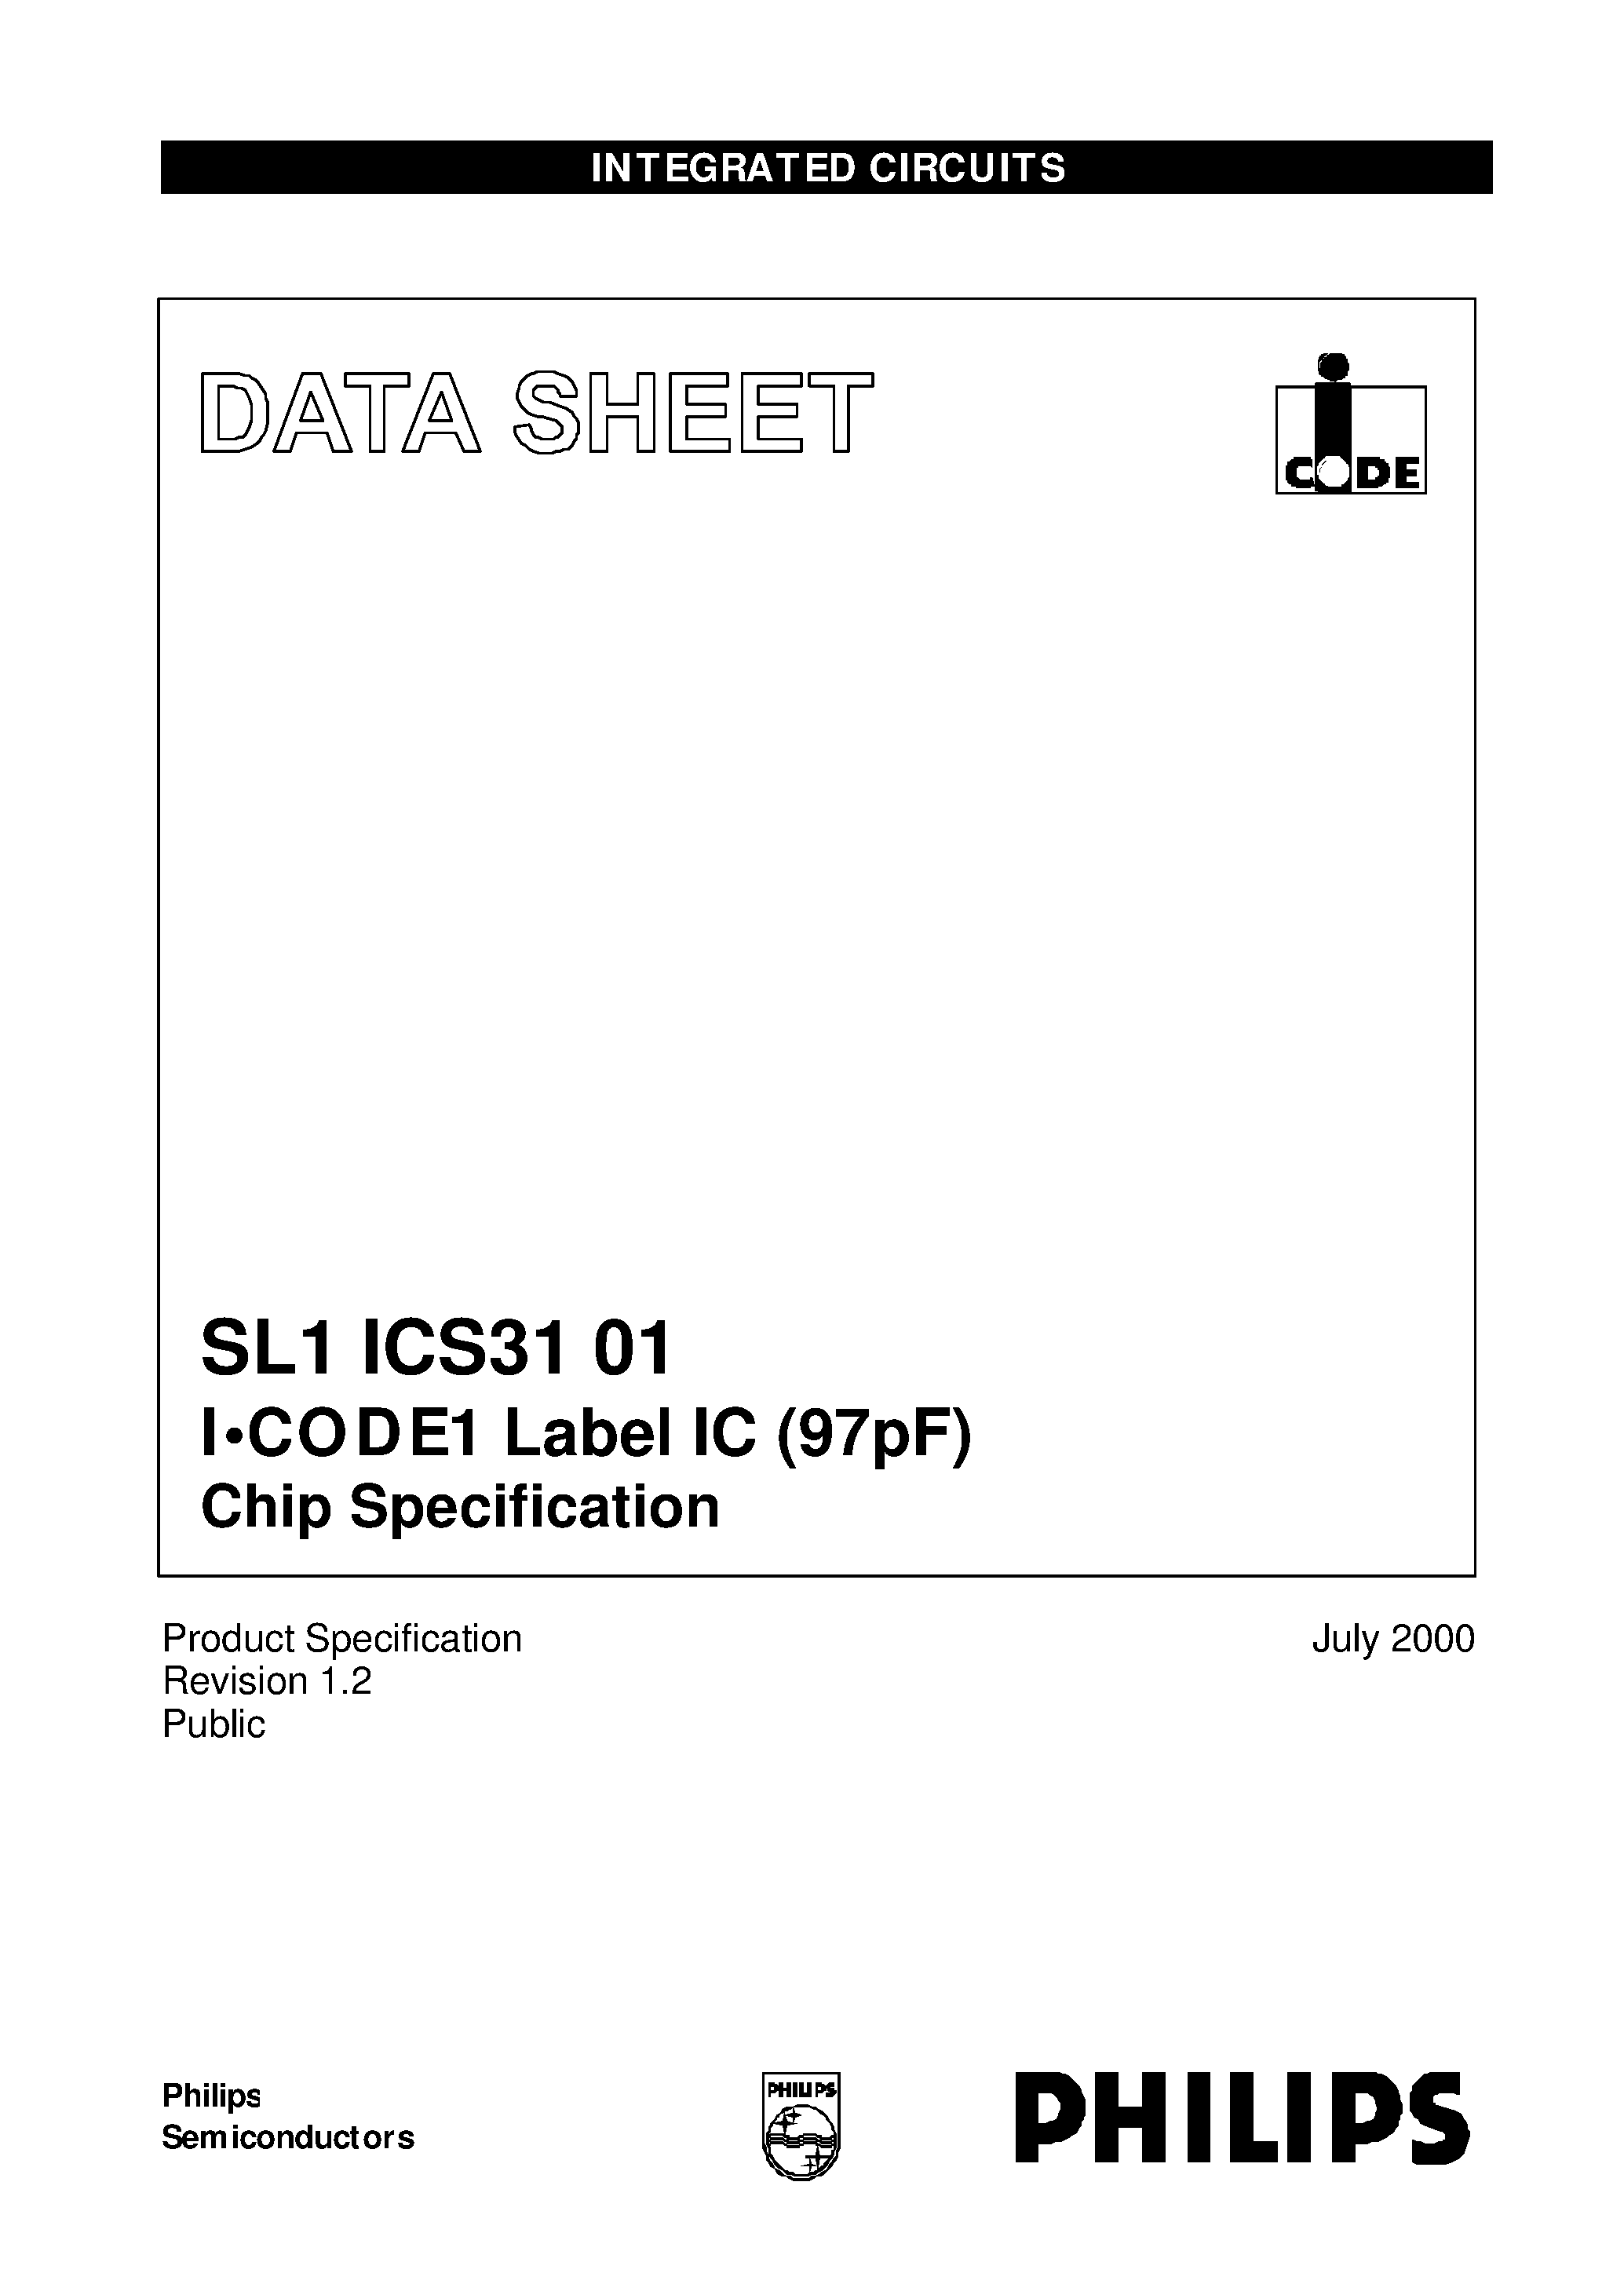 Даташит SL1ICS3101W - I.CODE1 Label IC 97pF Chip Specification страница 1